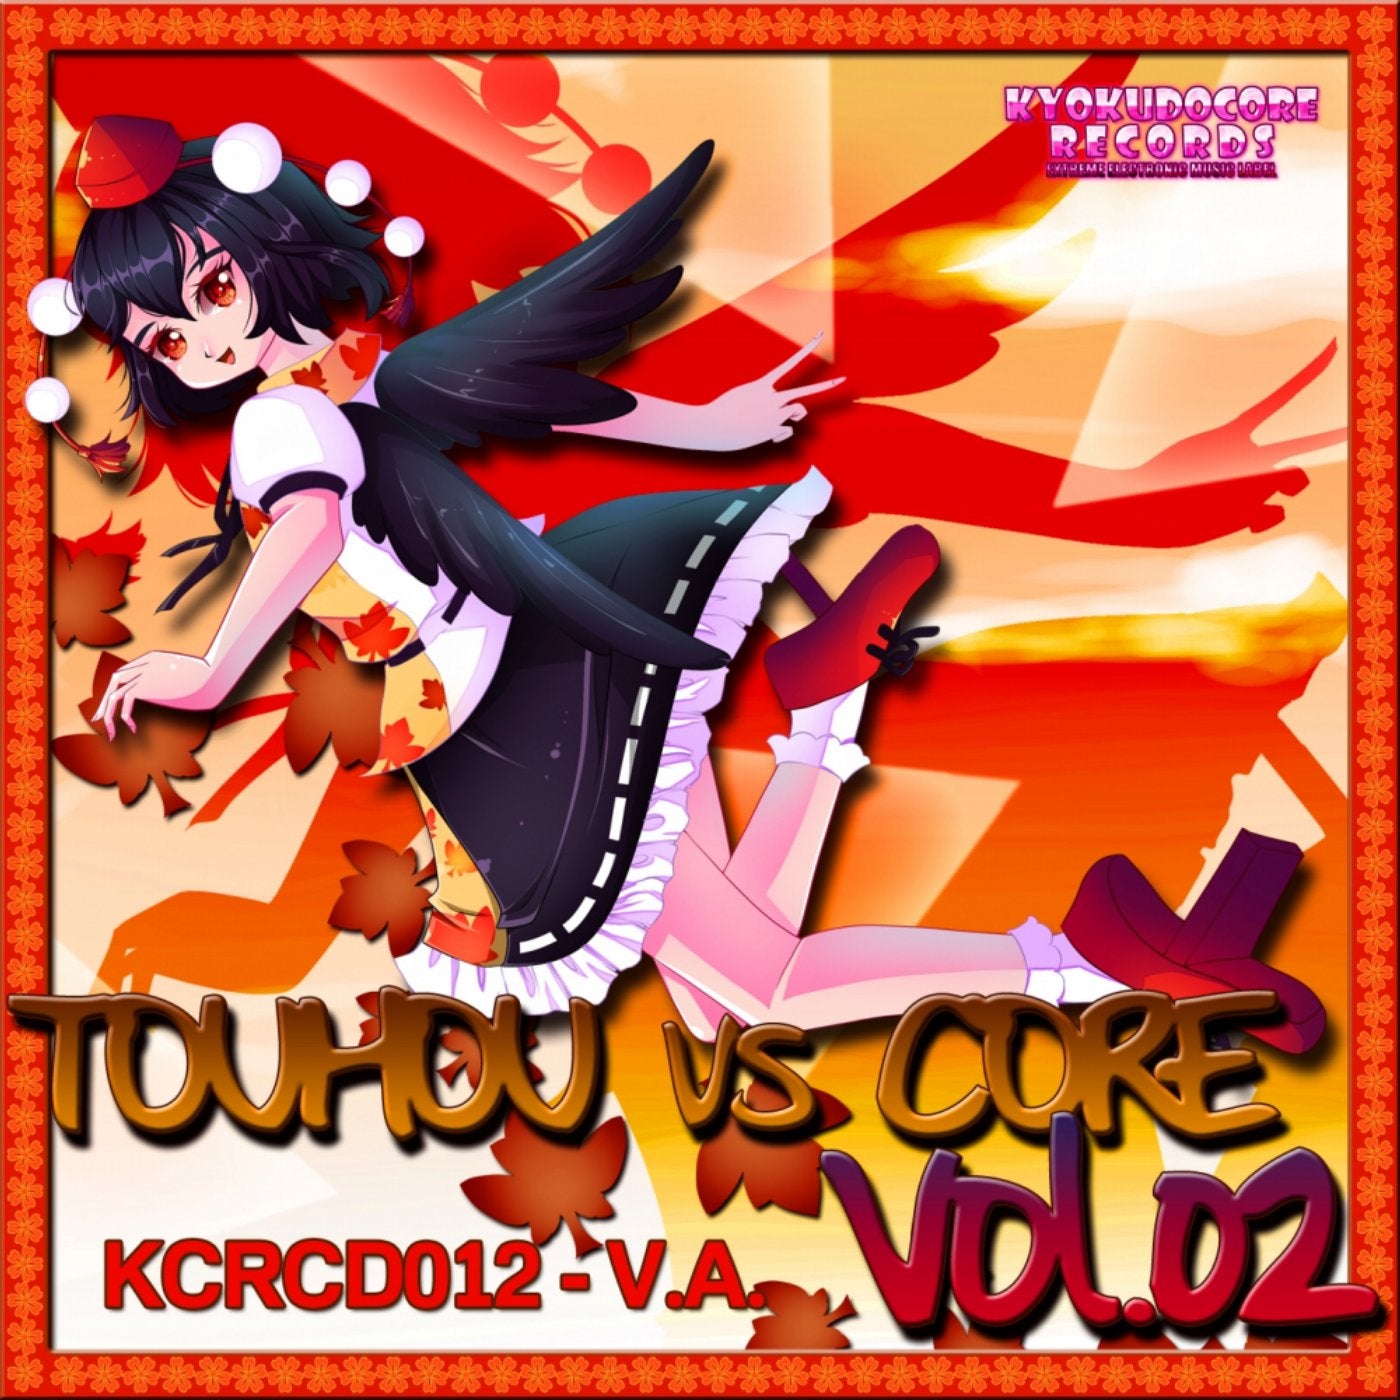 Touhou vs Core Vol. 02